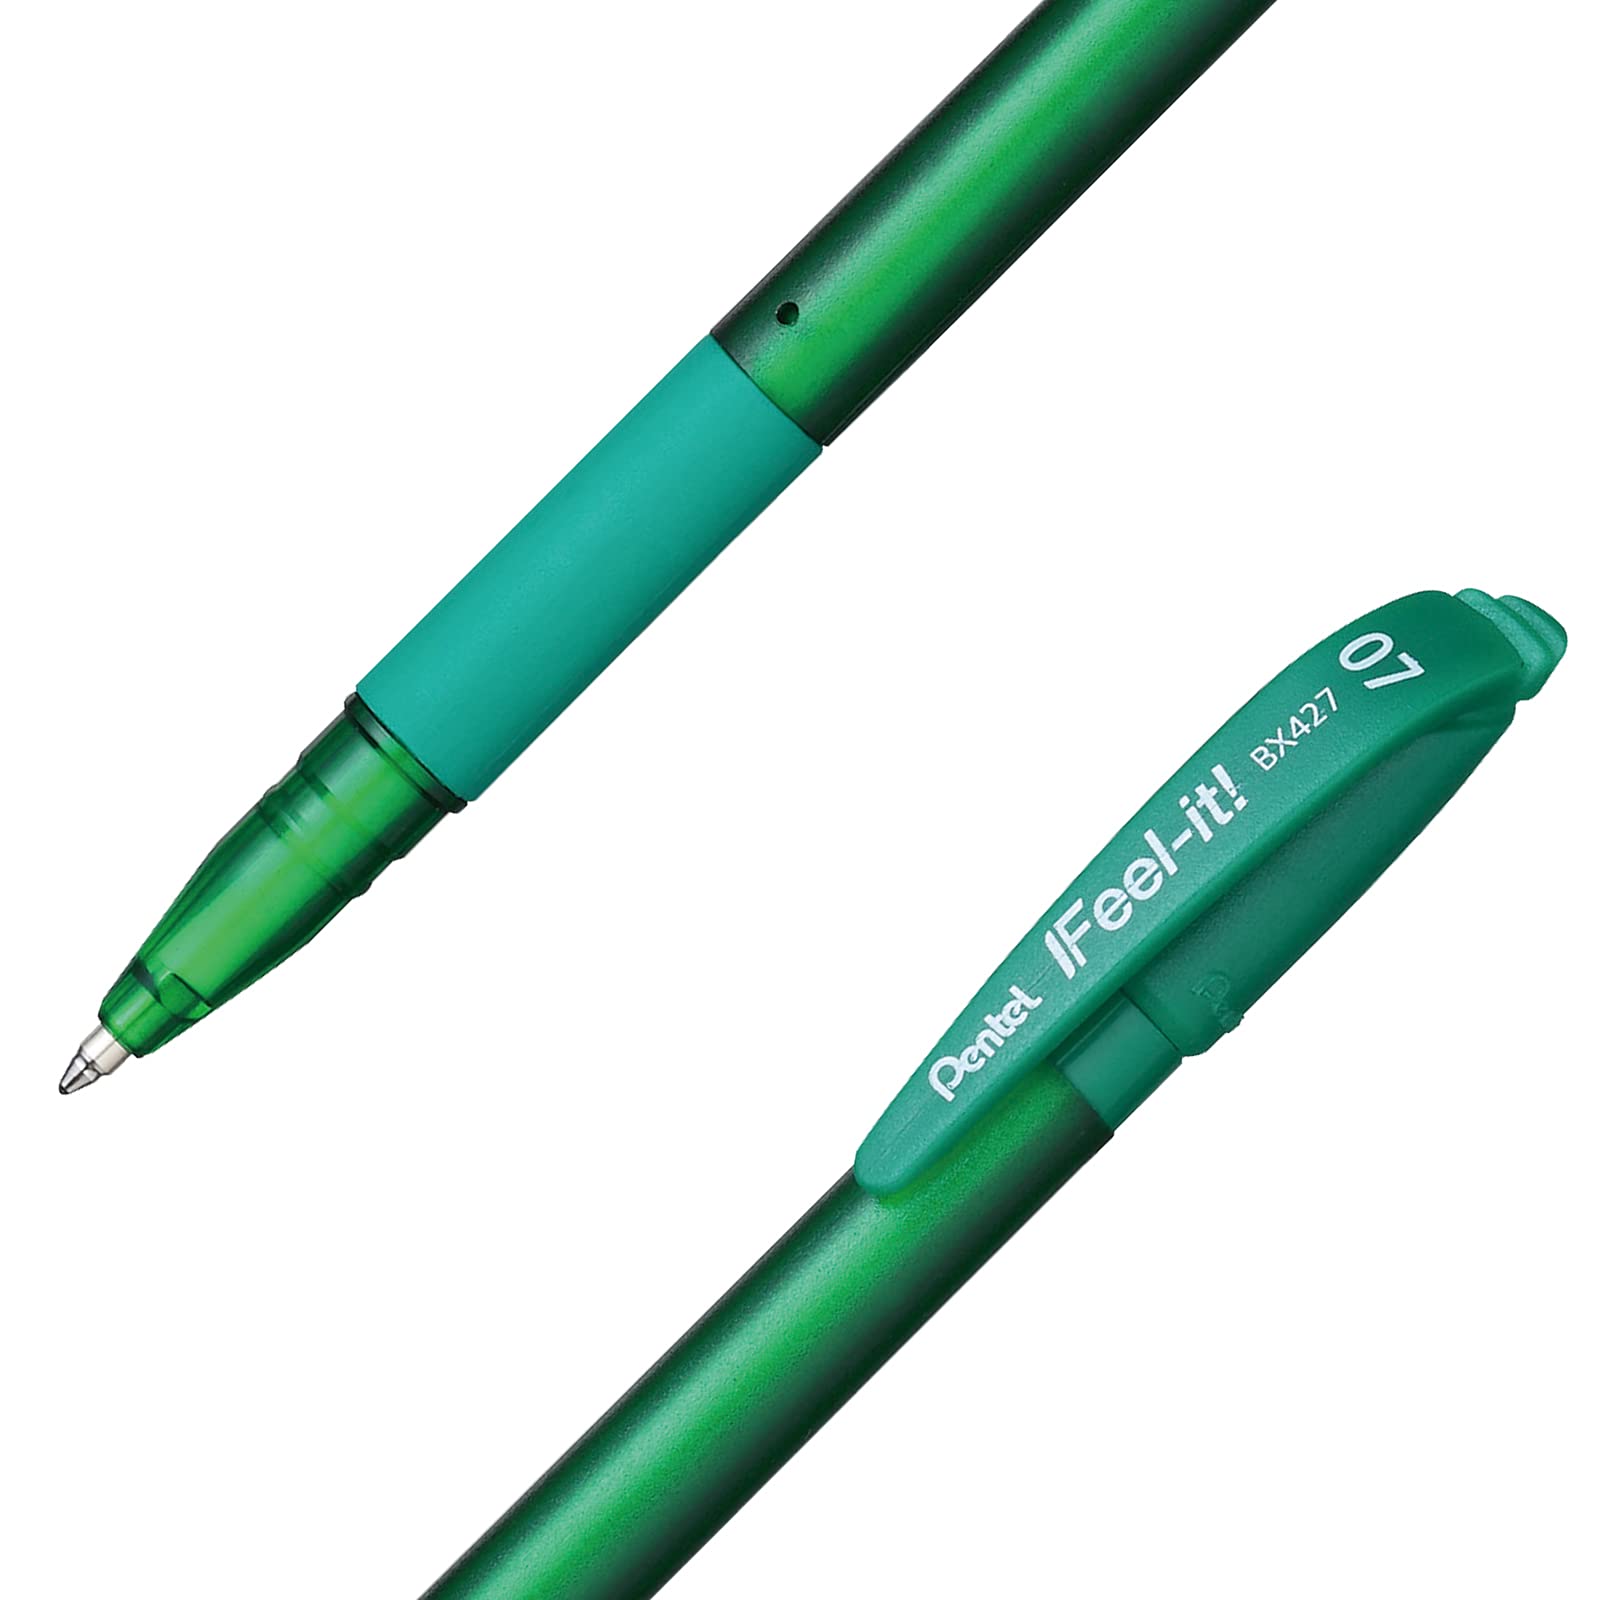 Bolígrafo Pentel feel it, punta 0.7 mm, Bolígrafo Pentel ifeel it, caja con 12 piezas, color verde, tinta de baja densidad que proporciona una suave escritura, con tapa y agarre de caucho, punta metálica de 0.7mm, el tono del cuerpo indica el color de la tinta - BX427-D